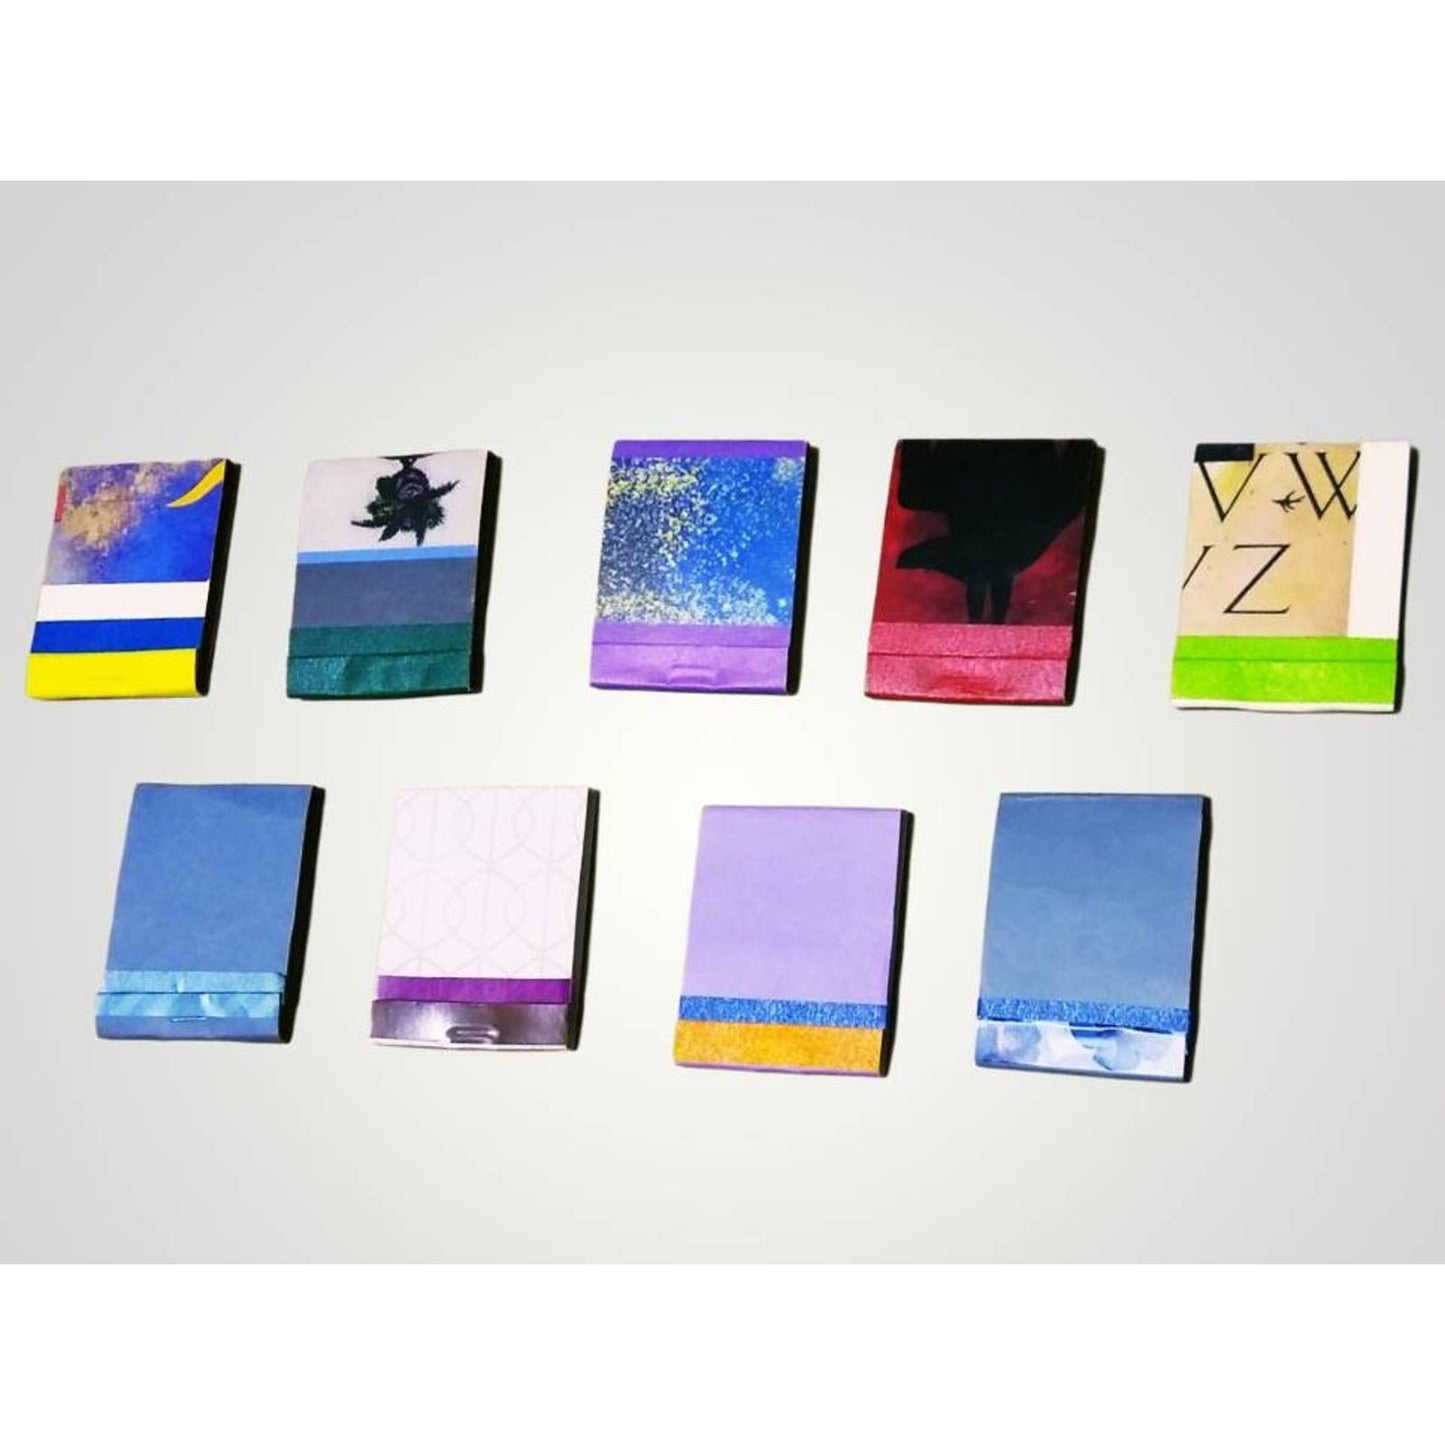 9 Miniature Notebooks, Matchbook Notepads